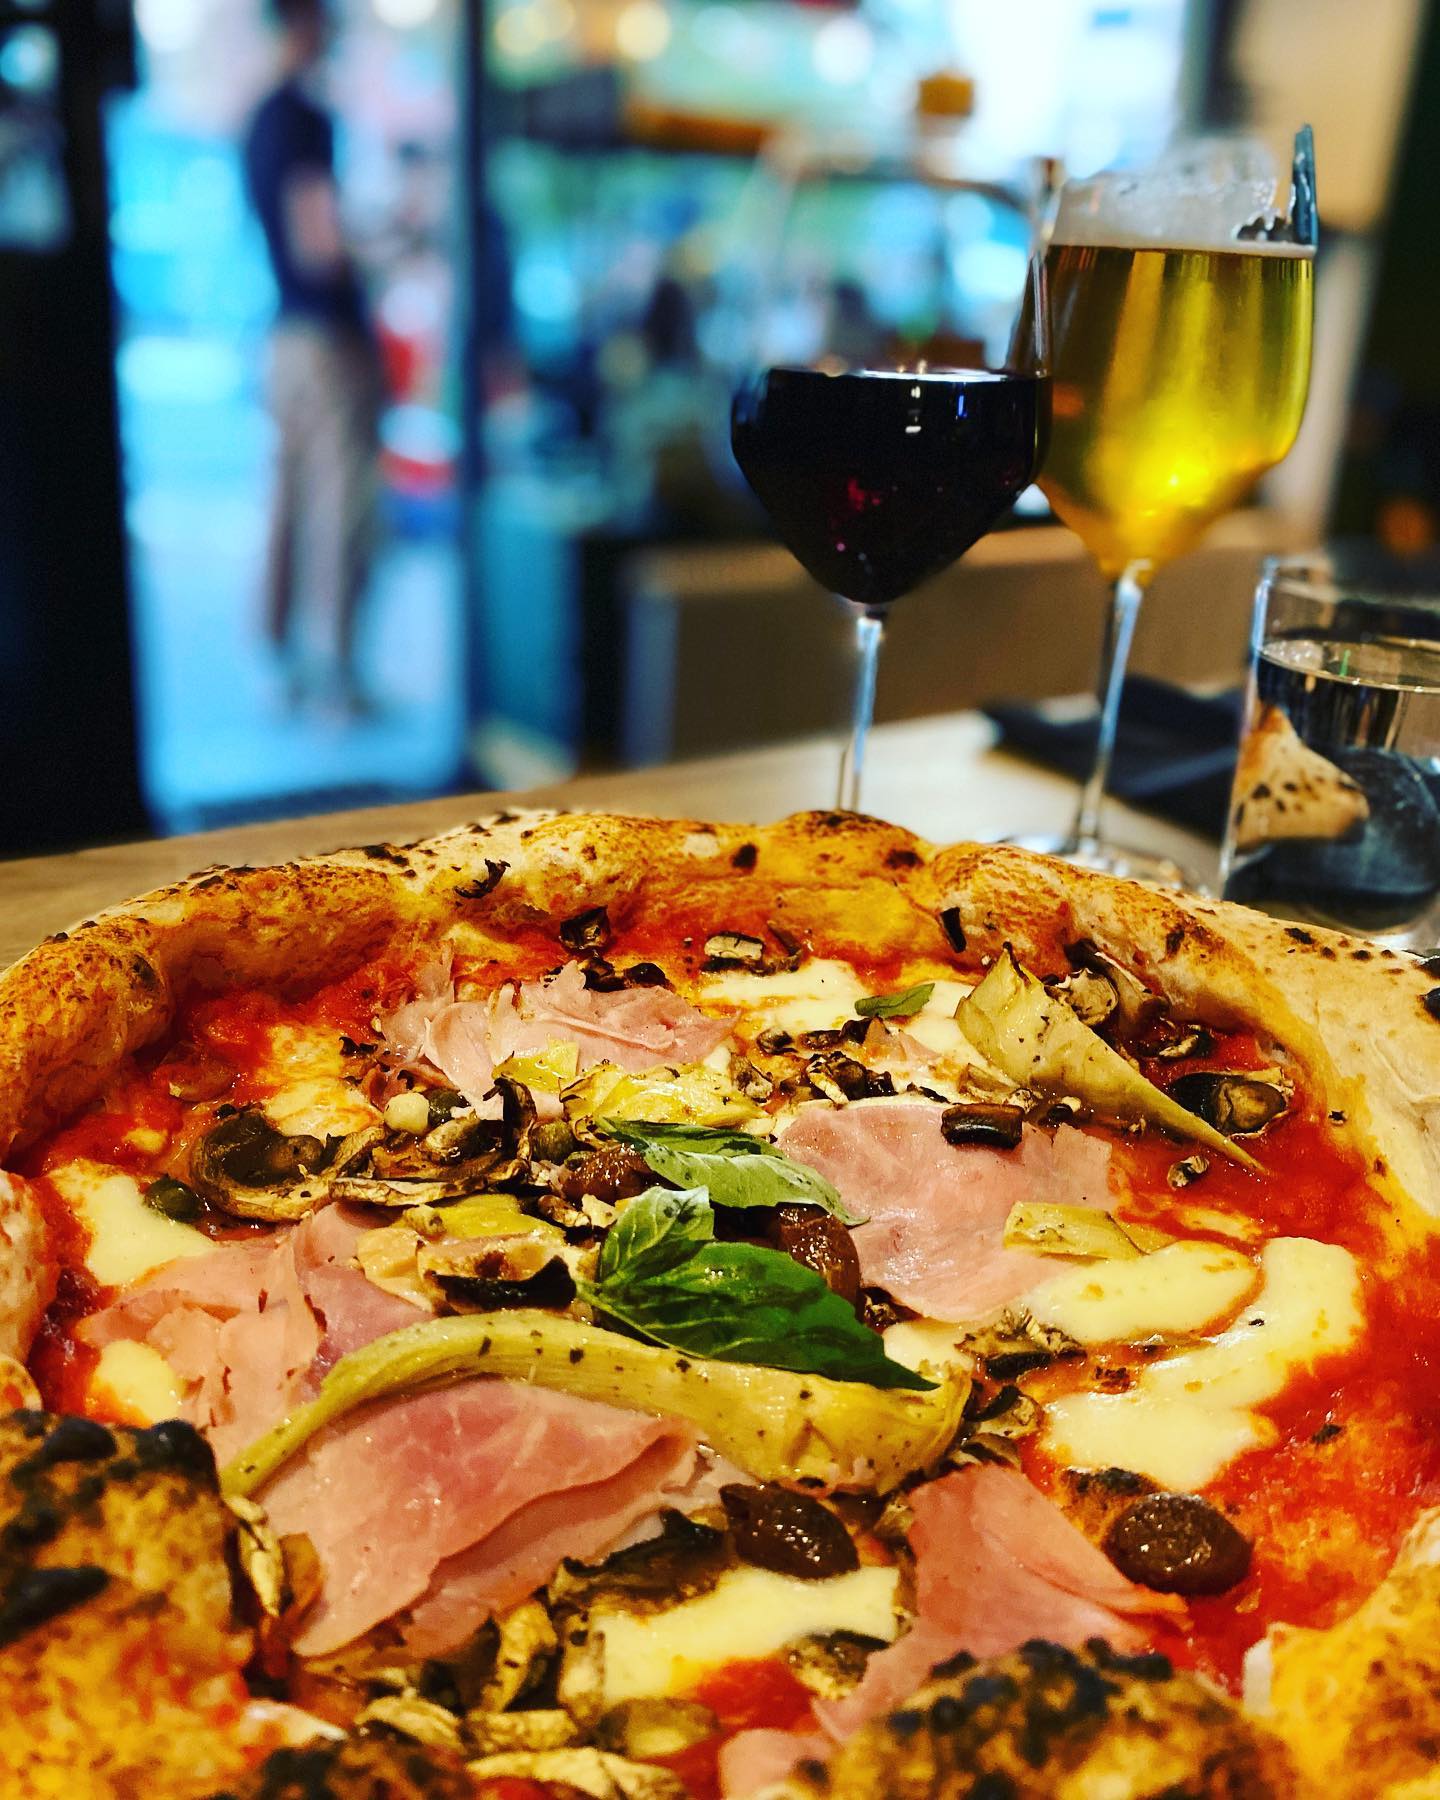 Vasastan bästa pizzor hittar ni på @magari.pizza 🍕
 En smak av Kampanien – "där den riktiga italienska pizzan föddes"💫💫💫
#napolifood #napolianskpizza #vasastan #foodlover #pizzatime #pizzanapoletana #foodblogger #foodphotography #lifestyleblogger #instafood #italen #italienstyle